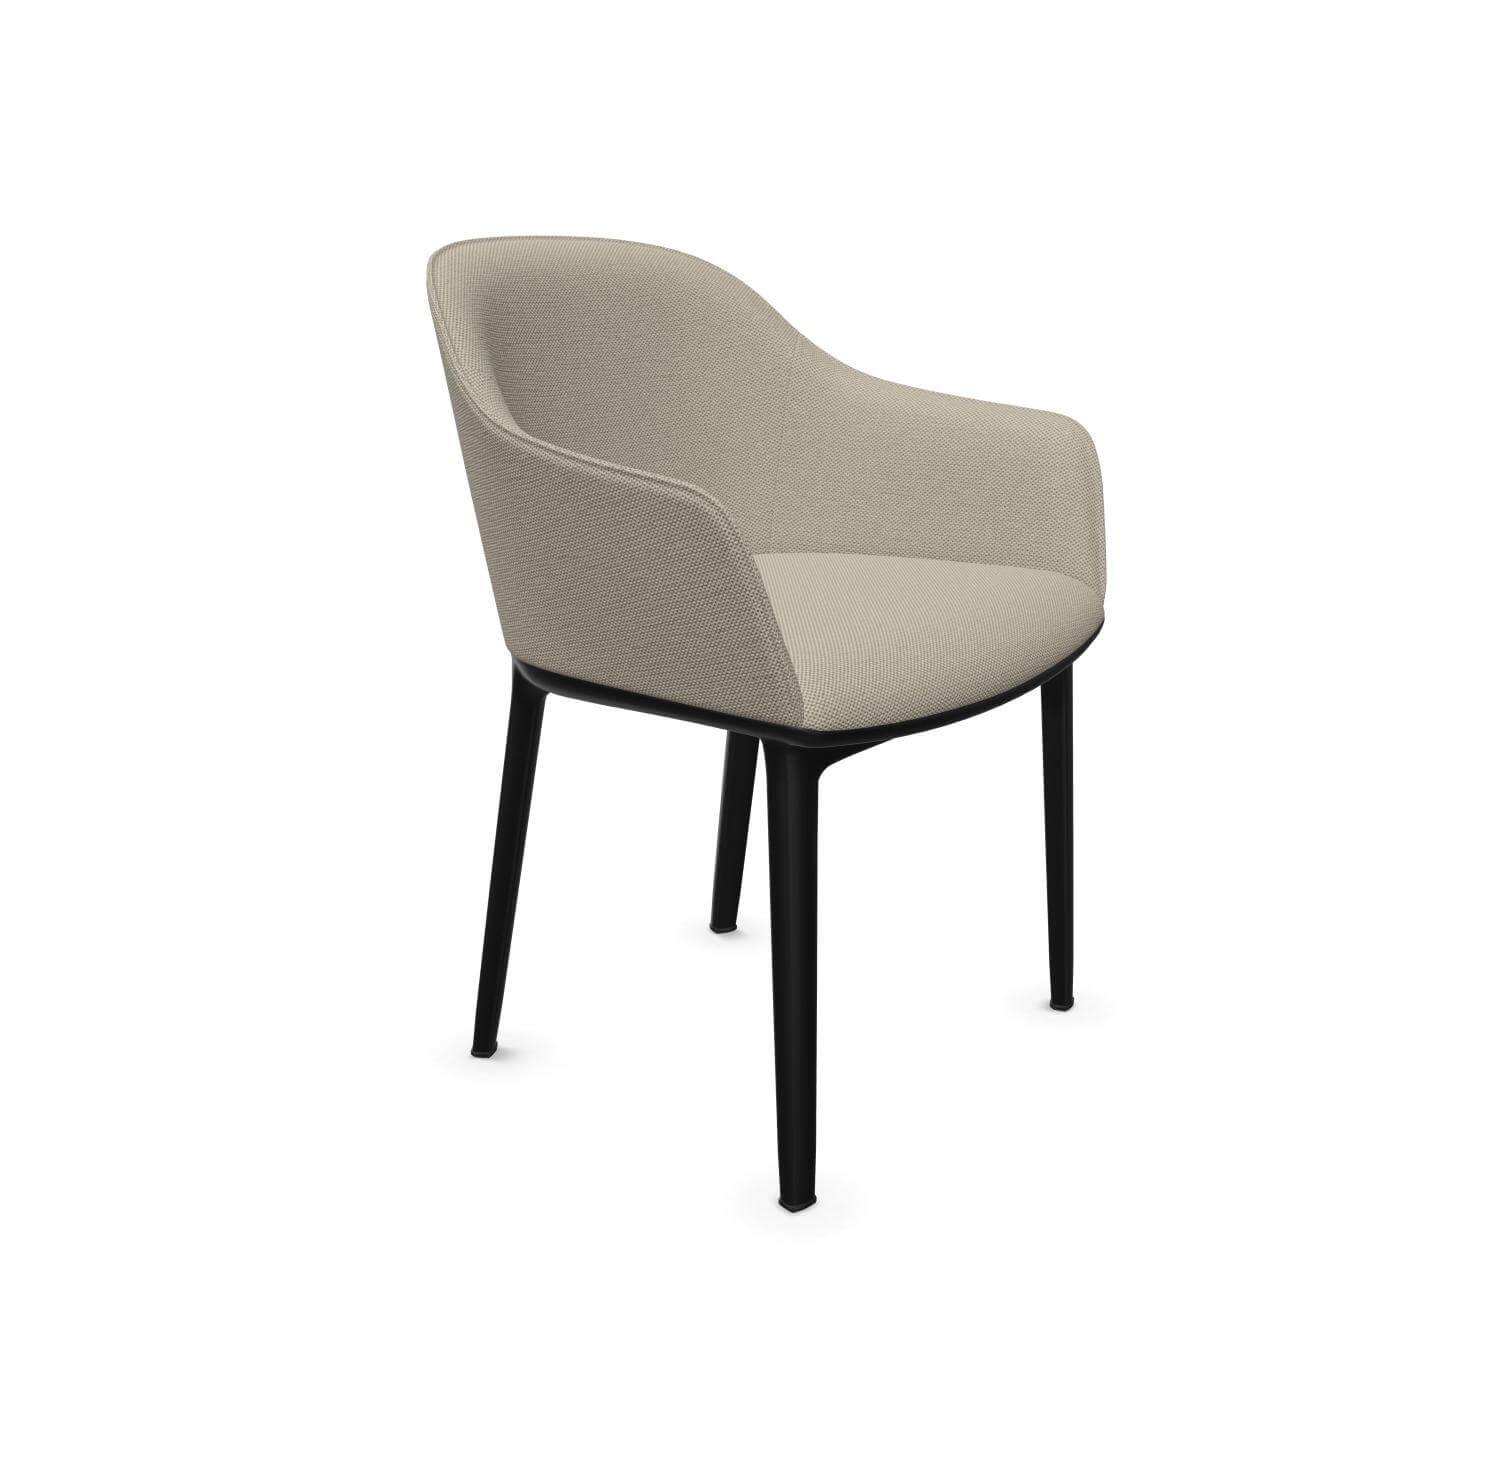 Stuhl Softshell Chair Bezug Warmgrey Elfenbein Beige Gestell Kunststoff Basic Dark 30 Schwarz